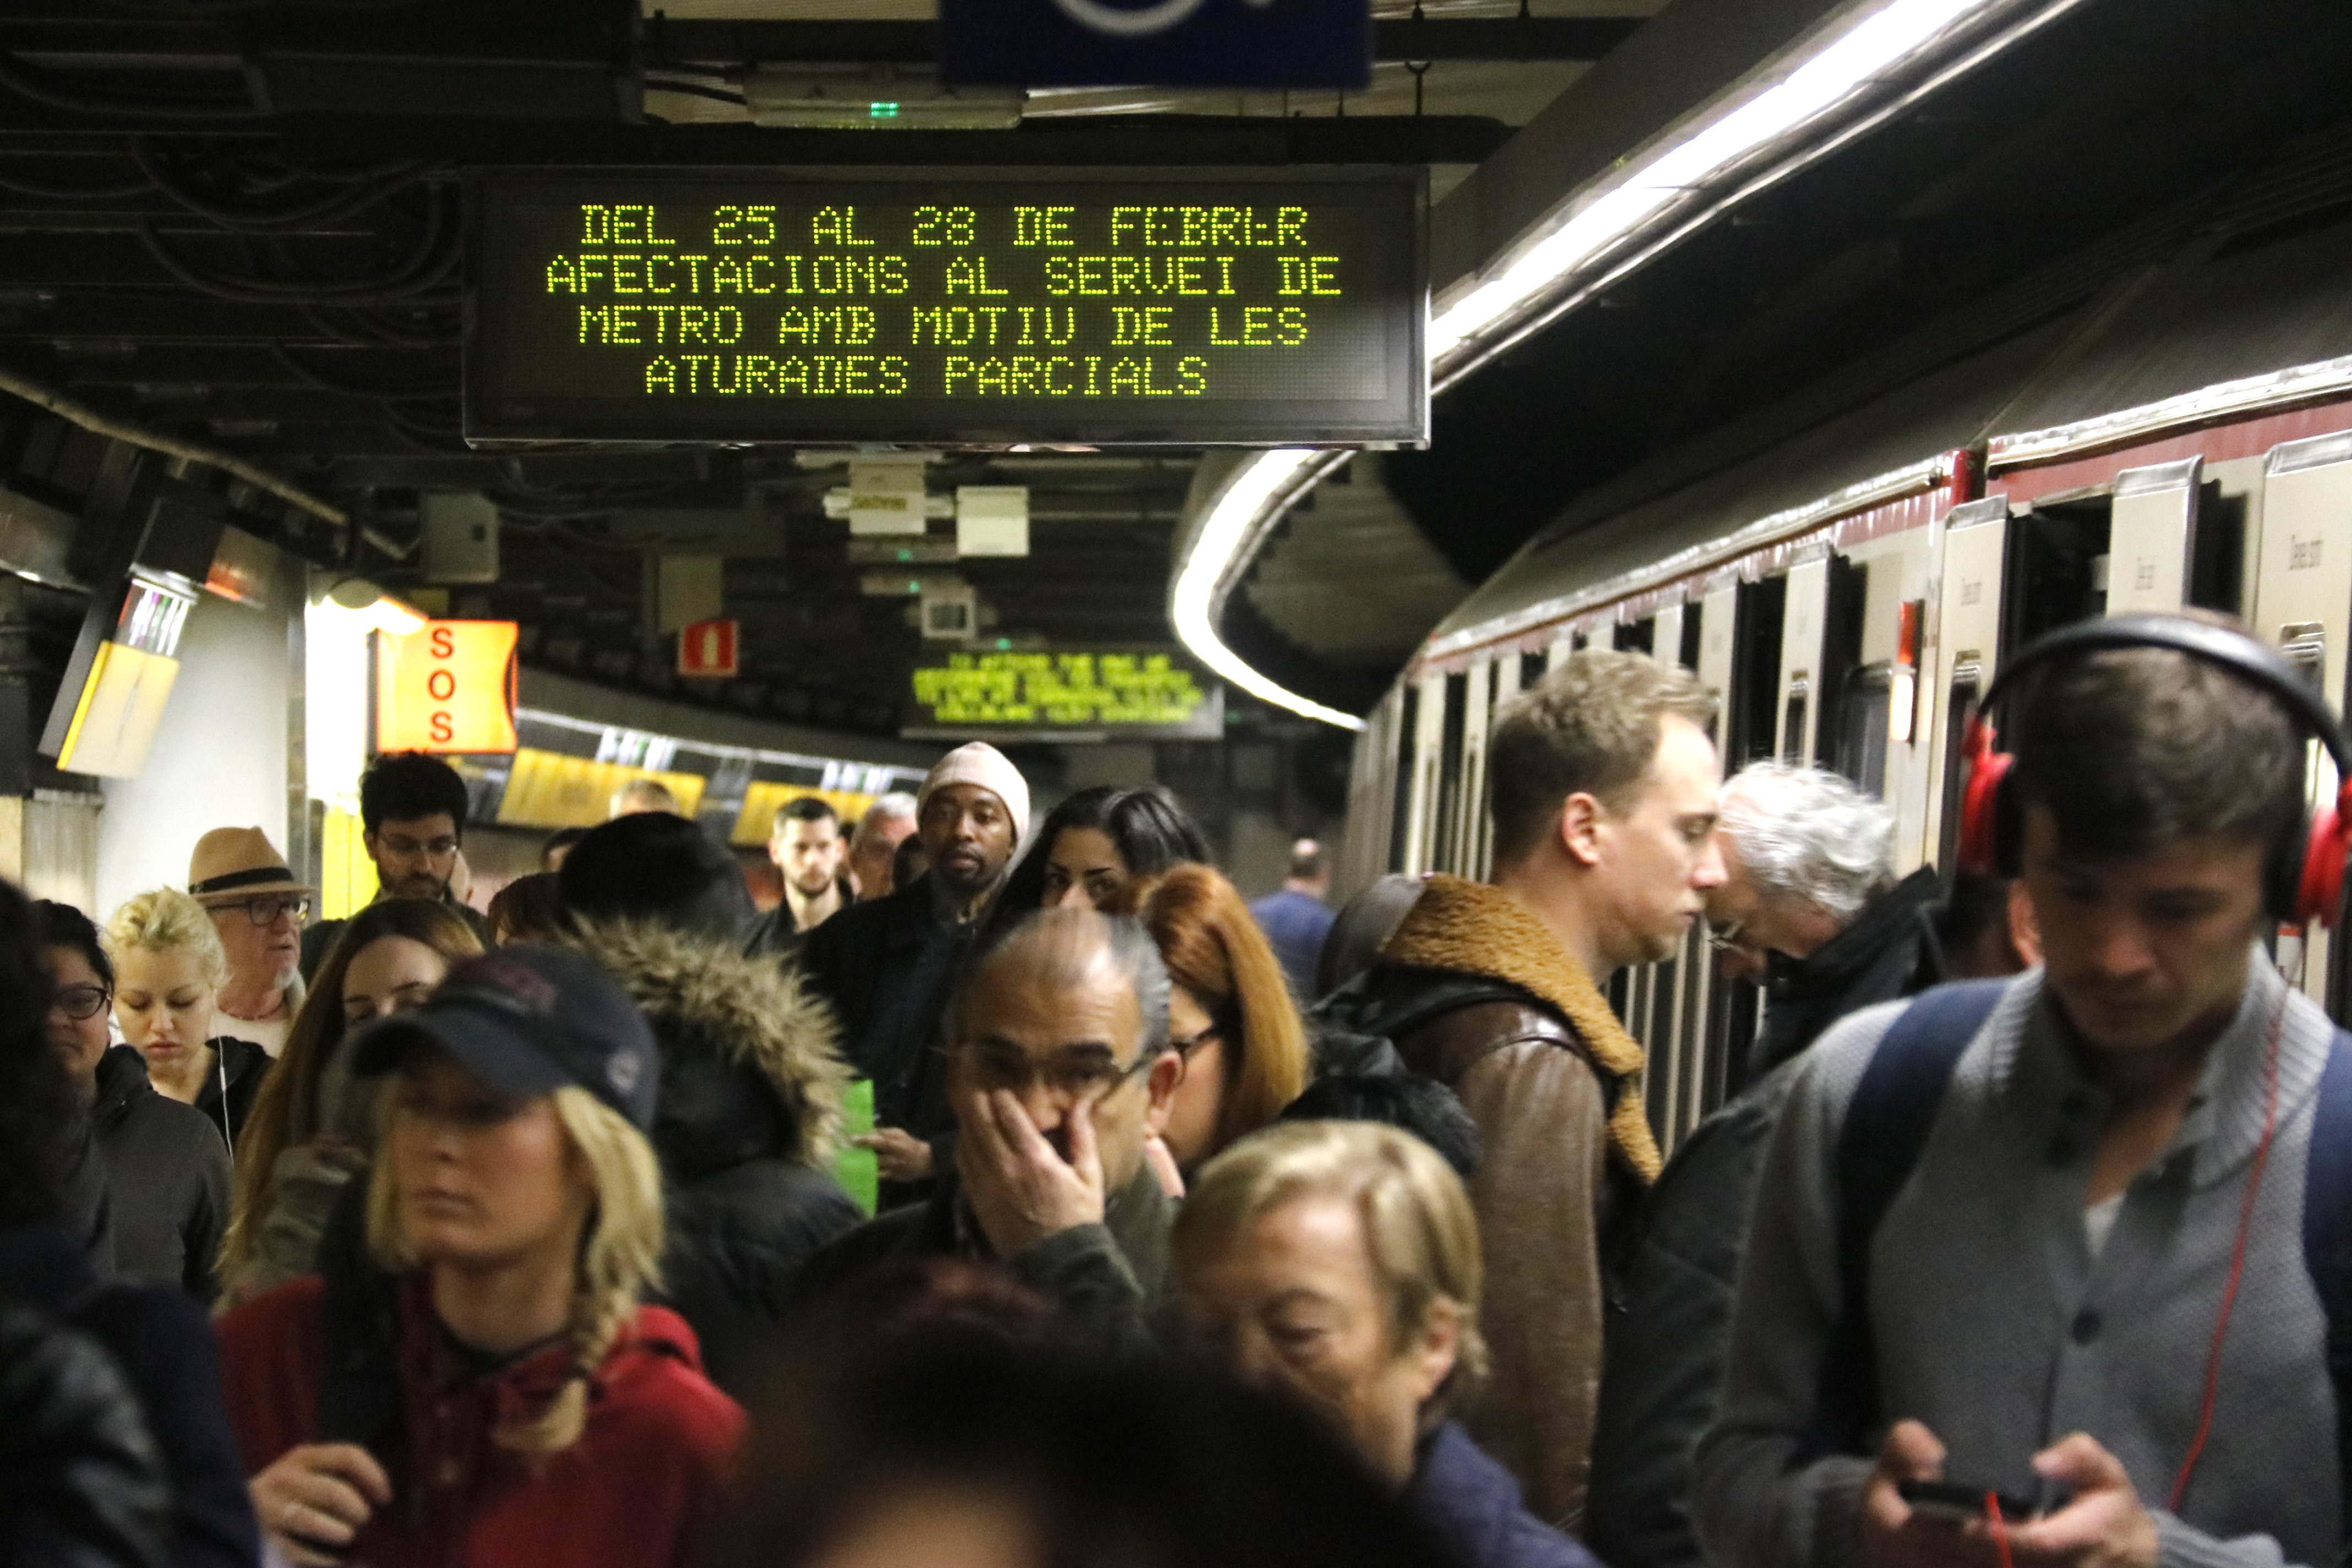 Noves vagues al metro de Barcelona el 8 i 29 d'abril per l'amiant